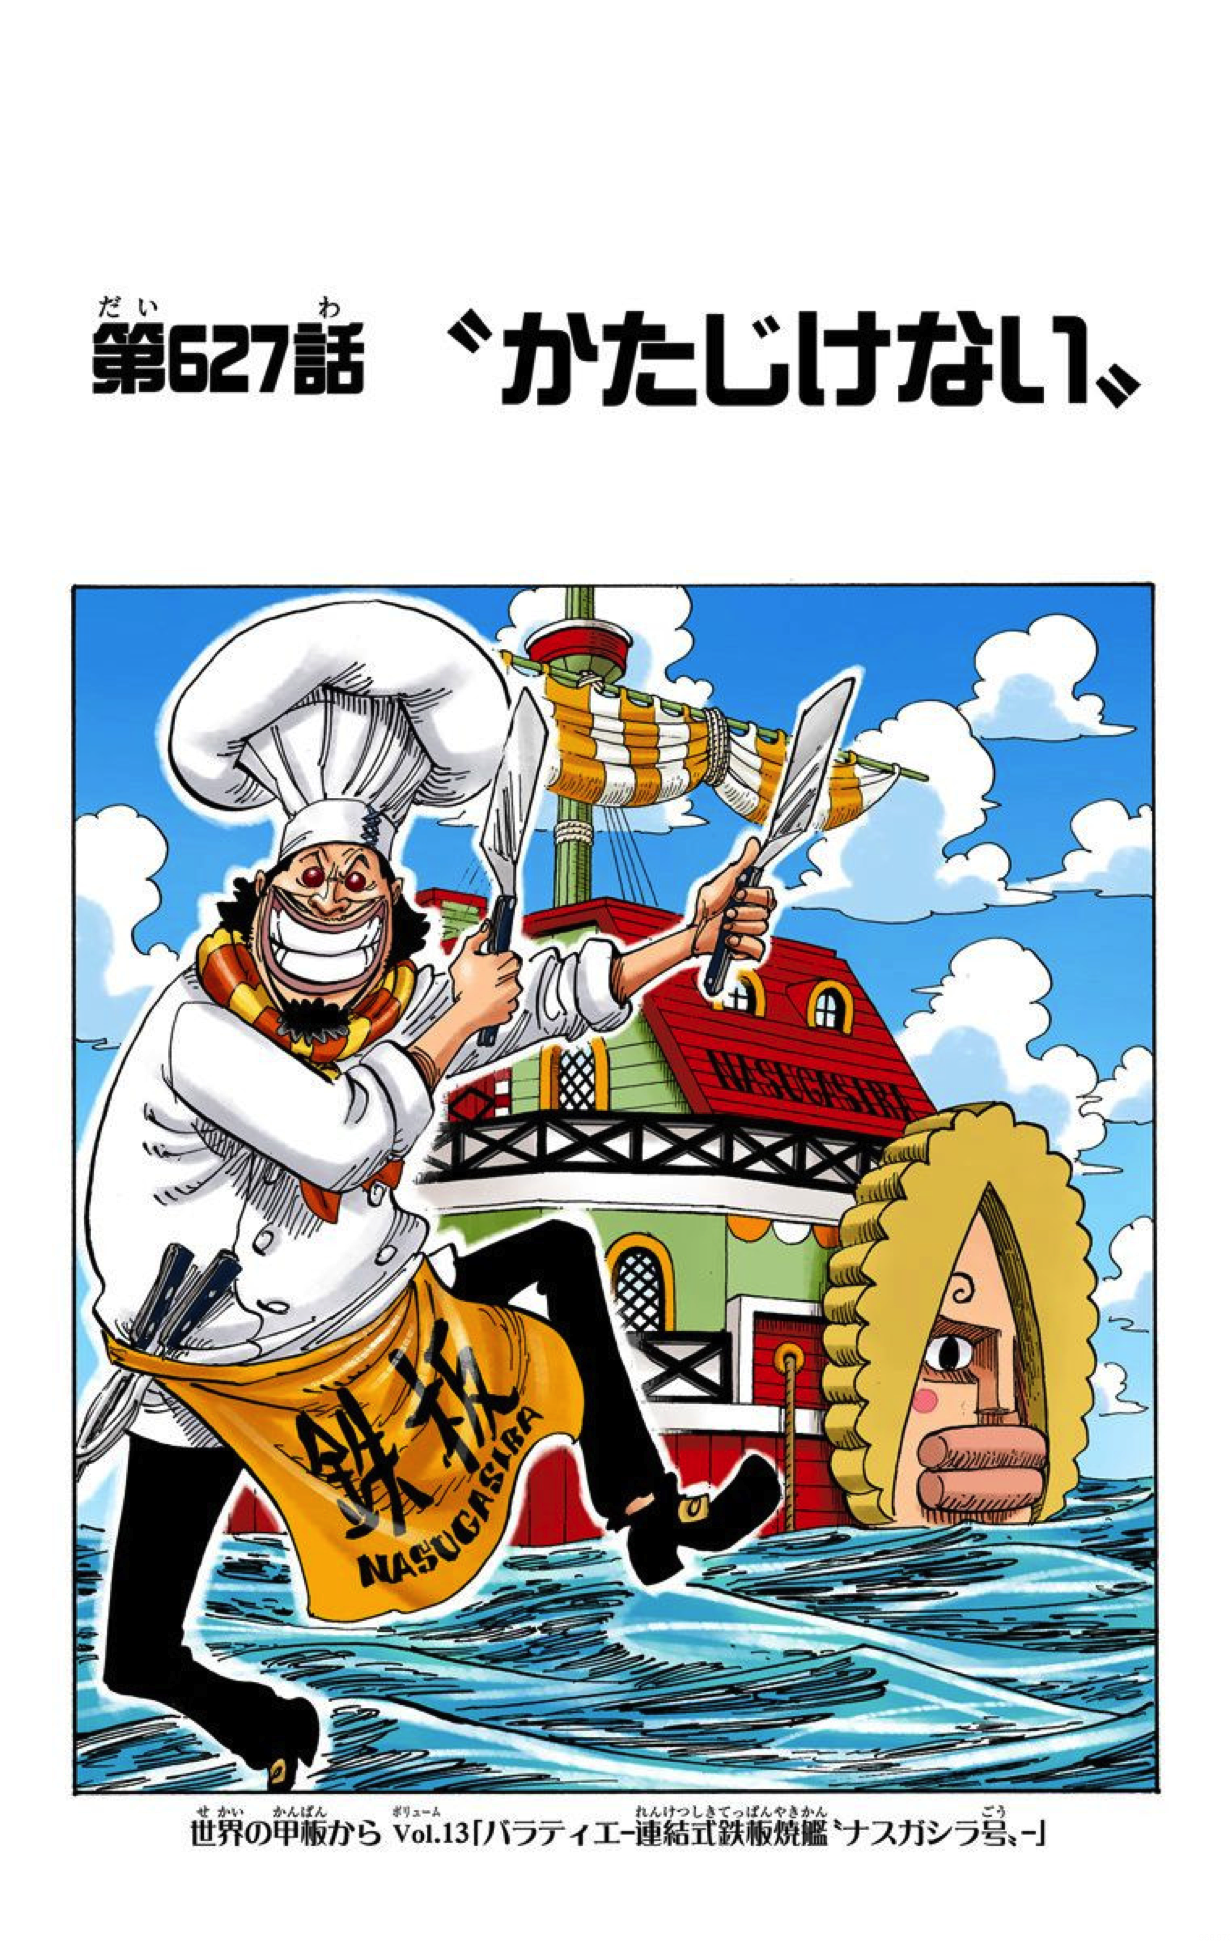 Capitulo 627 One Piece Wiki Fandom